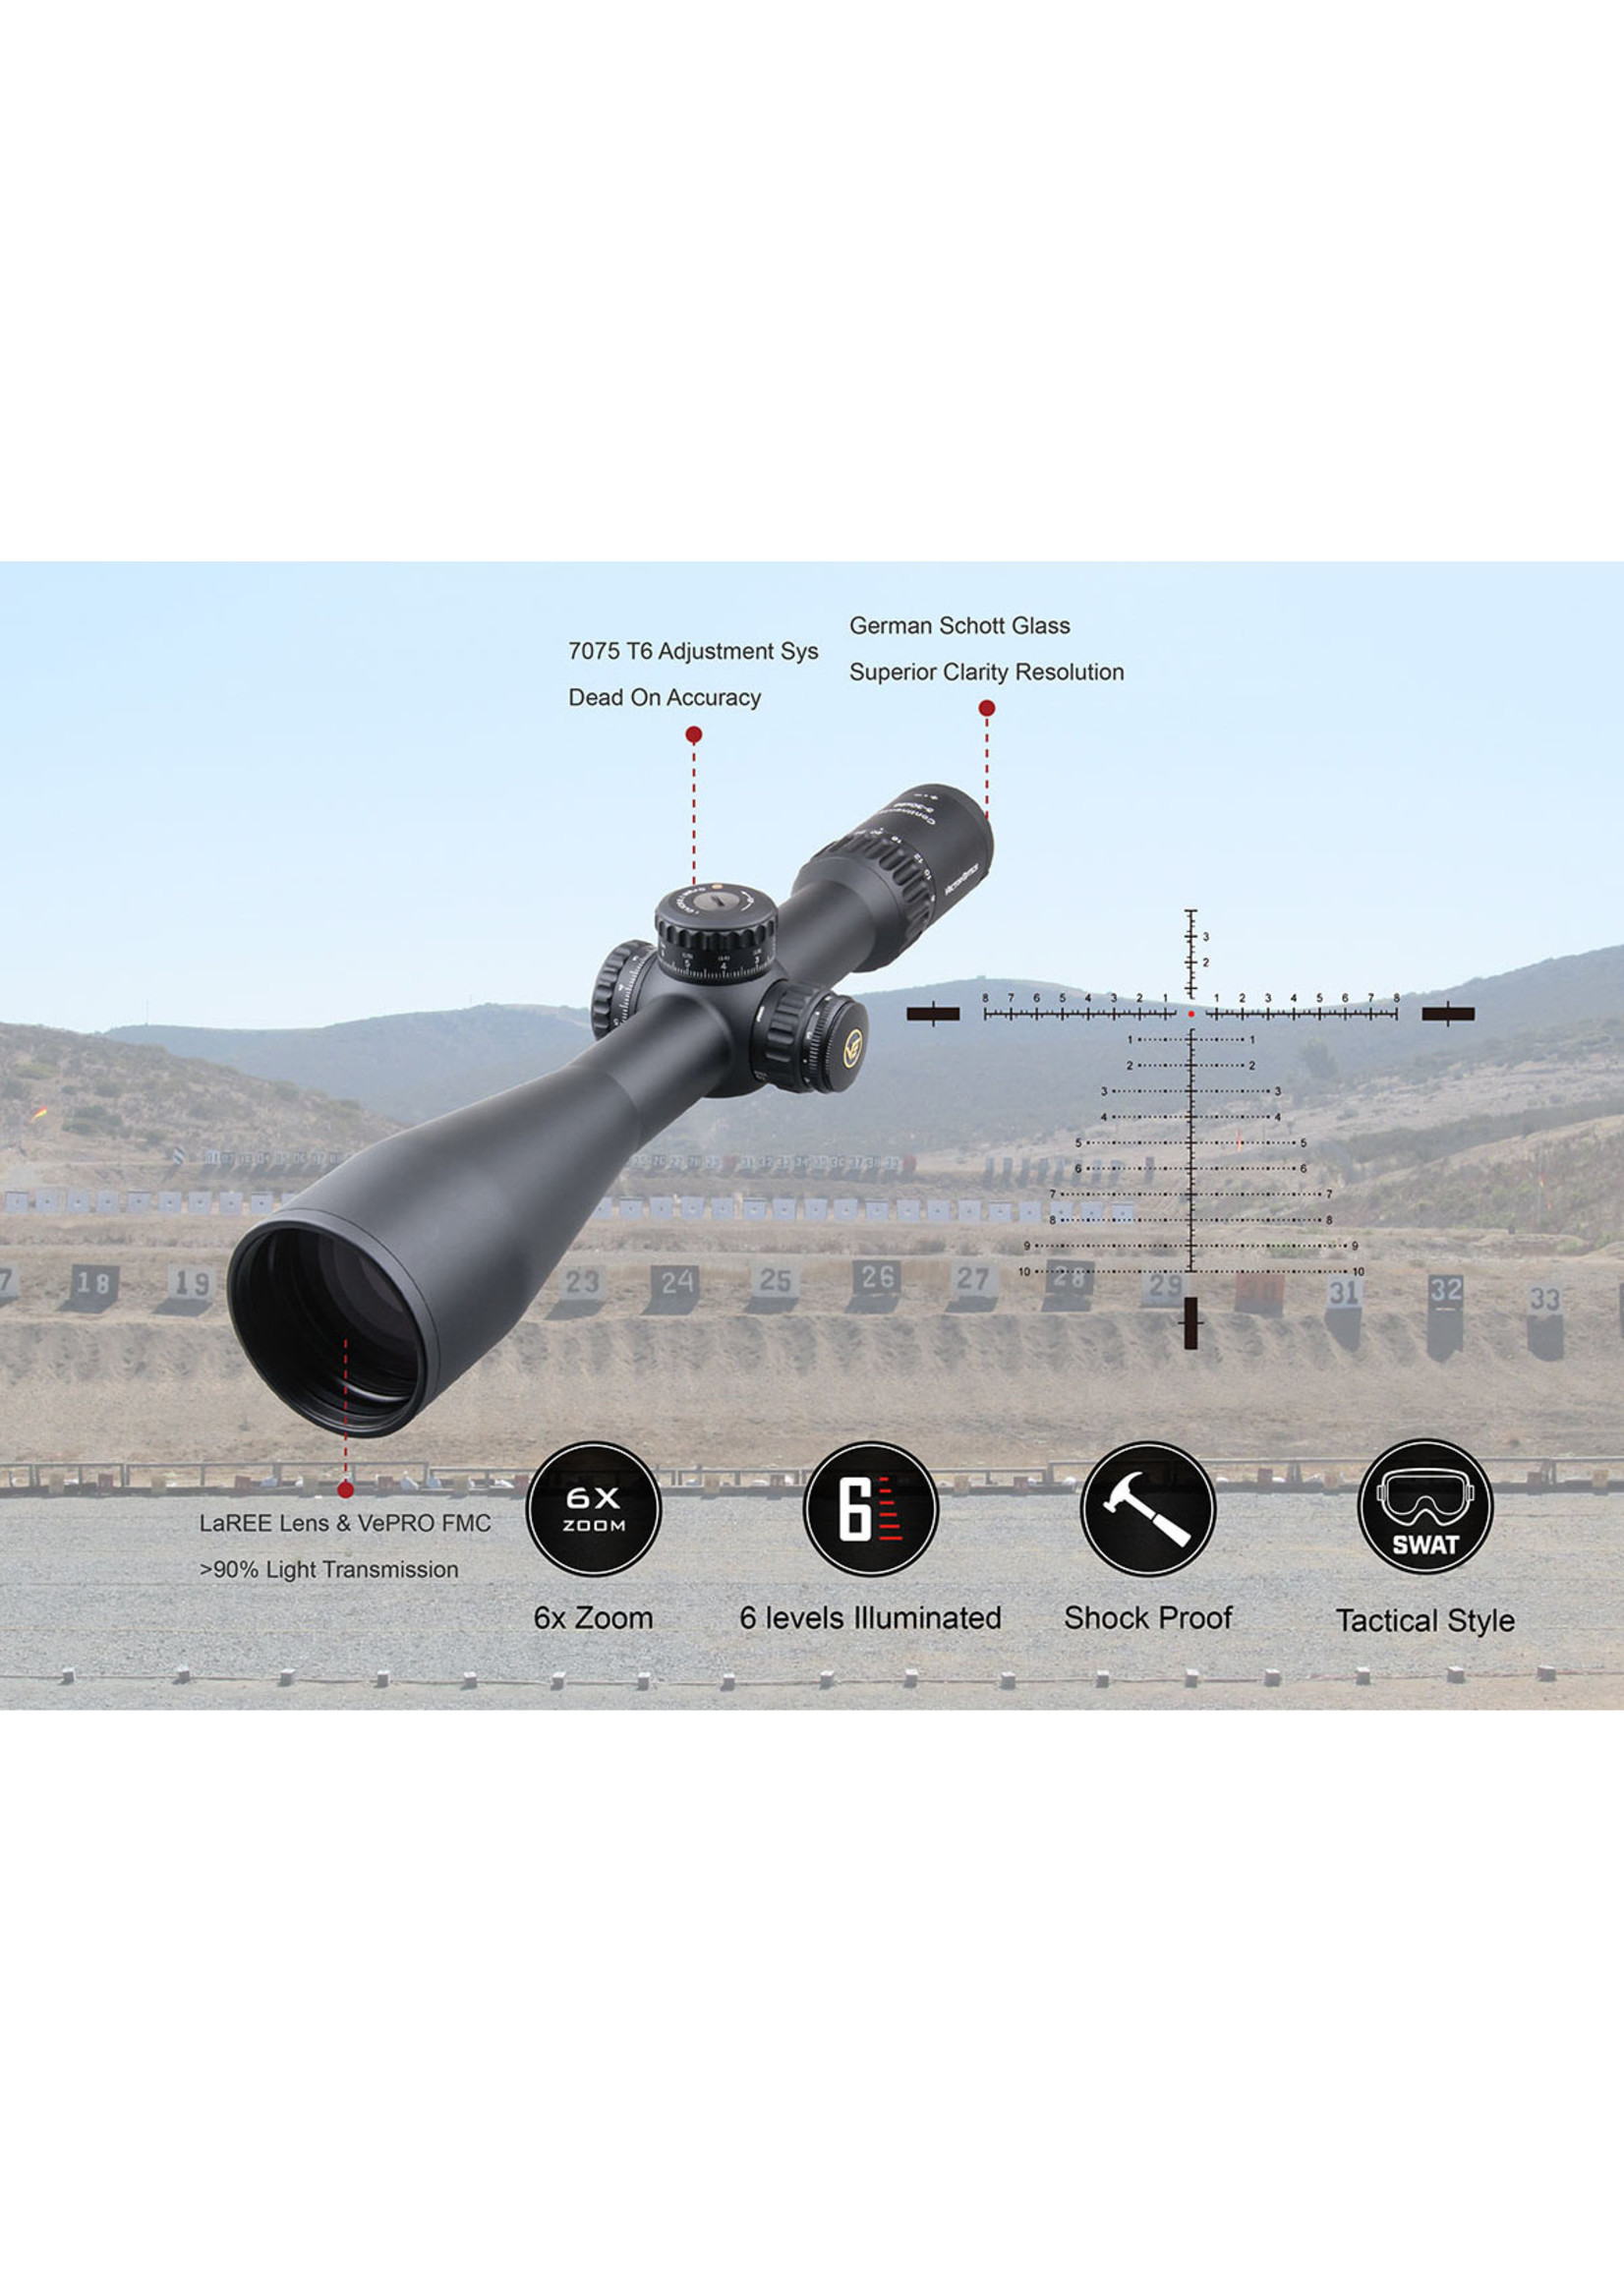 Vector Optics Vector Optics  Continental Tactical FFP series  Riflescope with 34mm Tube /Zero stop/German Schott ED HD Glass